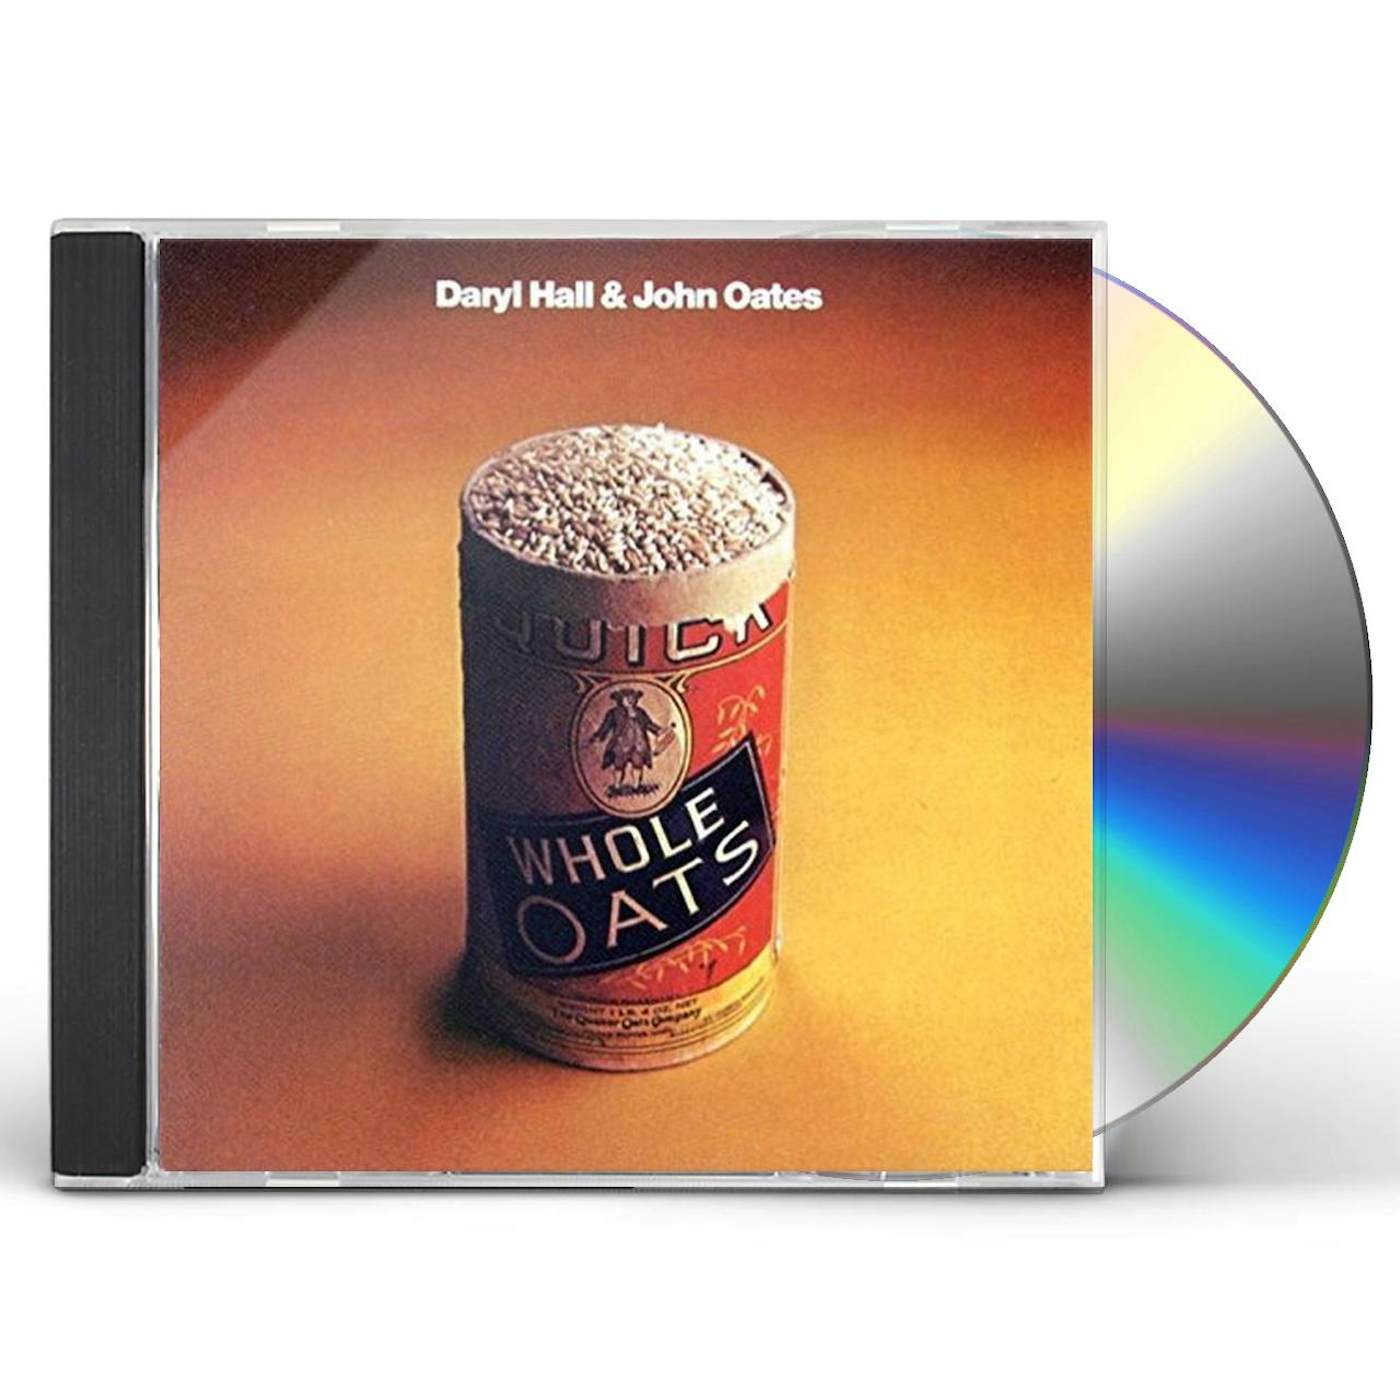 Daryl Hall WHOLE OATS CD